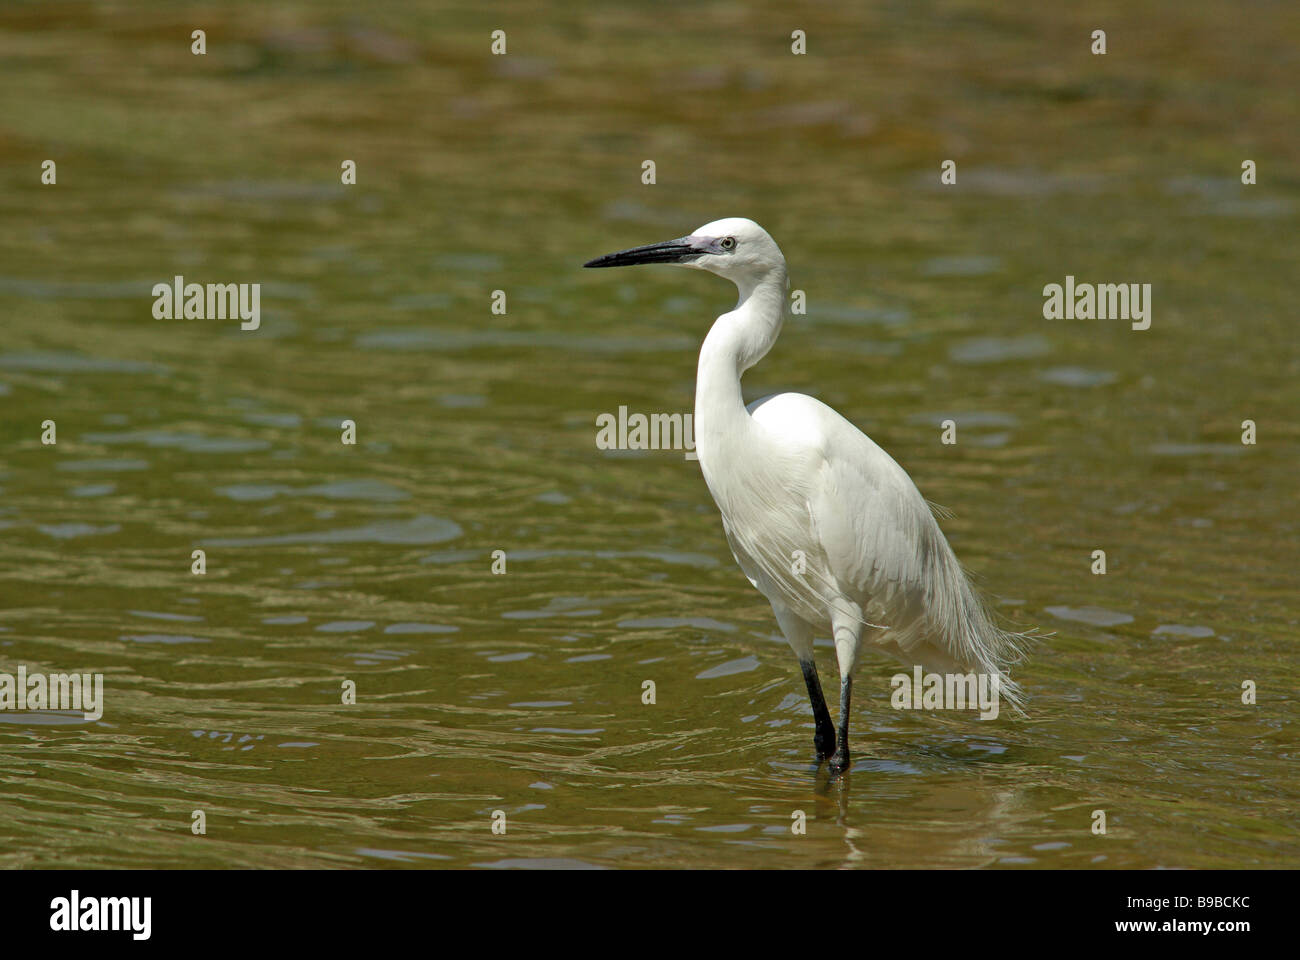 Little egret, Egretta garzetta Stock Photo